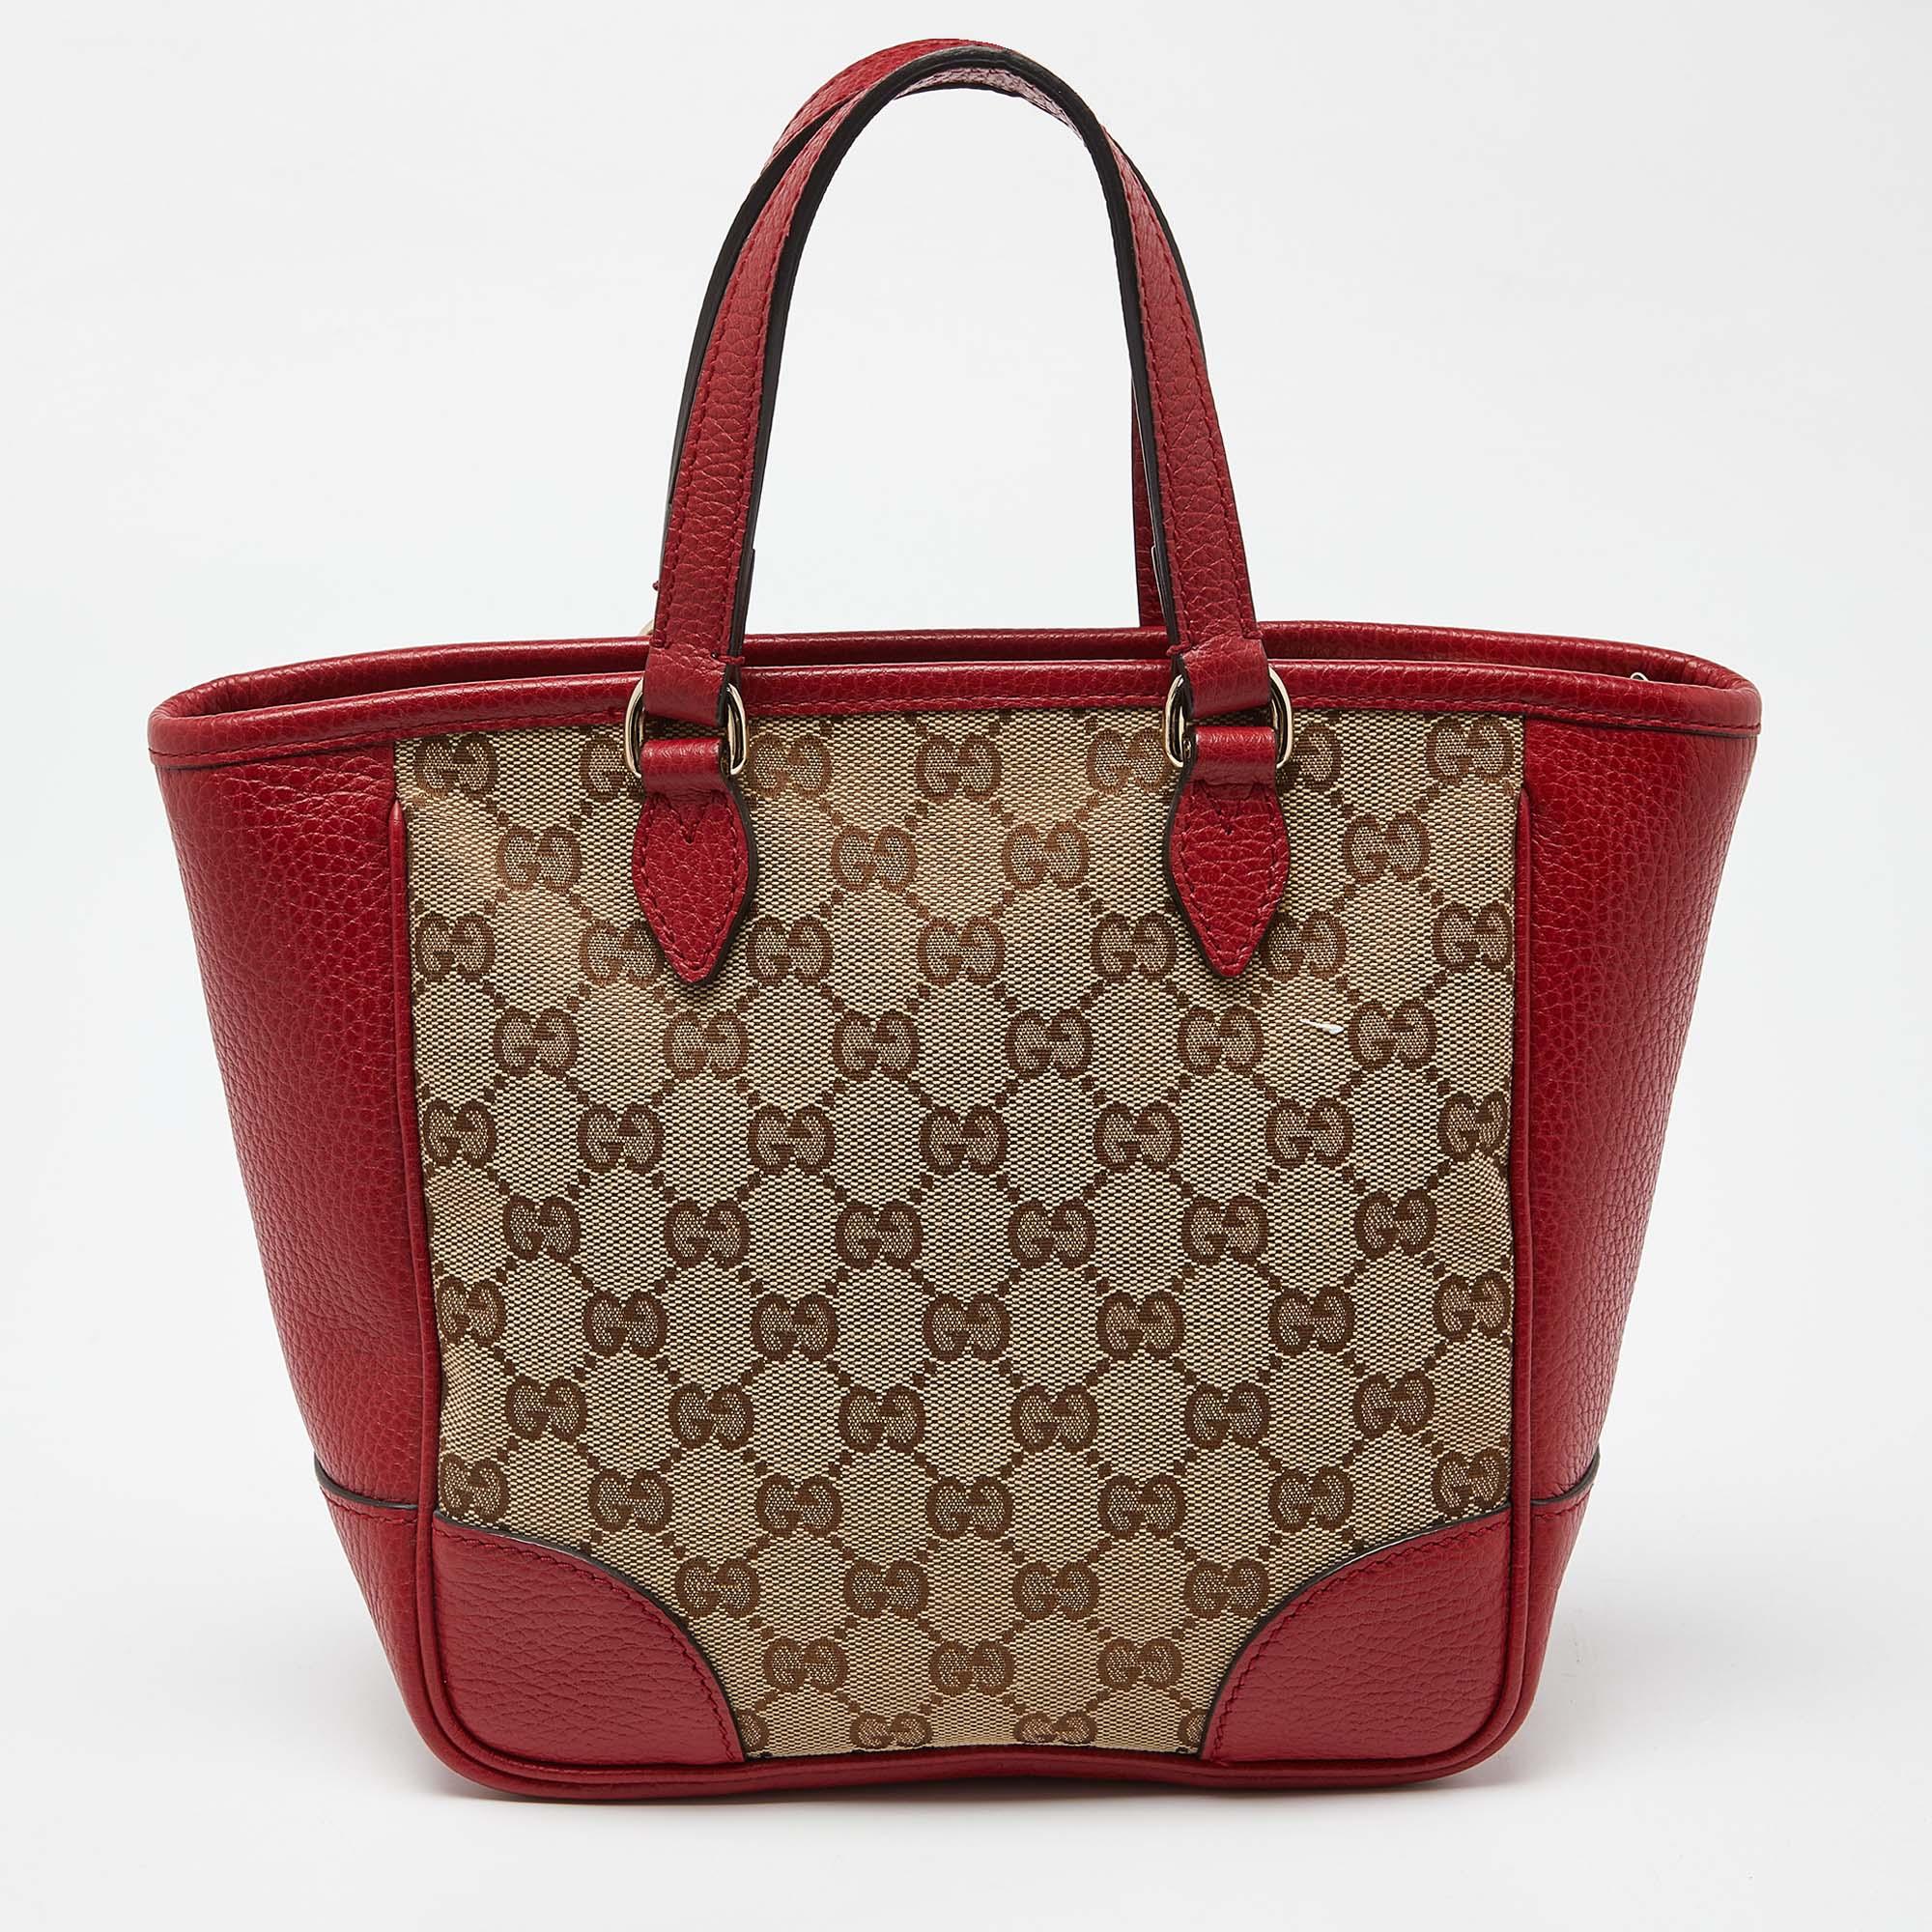 Diese Tote Bag von Gucci wurde aus GG Canvas und Leder gefertigt und zeichnet sich durch Stil und Funktionalität aus. Sie verfügt über zwei Griffe, einen geräumigen Innenraum und goldfarbene Beschläge. Es ist für den täglichen Gebrauch